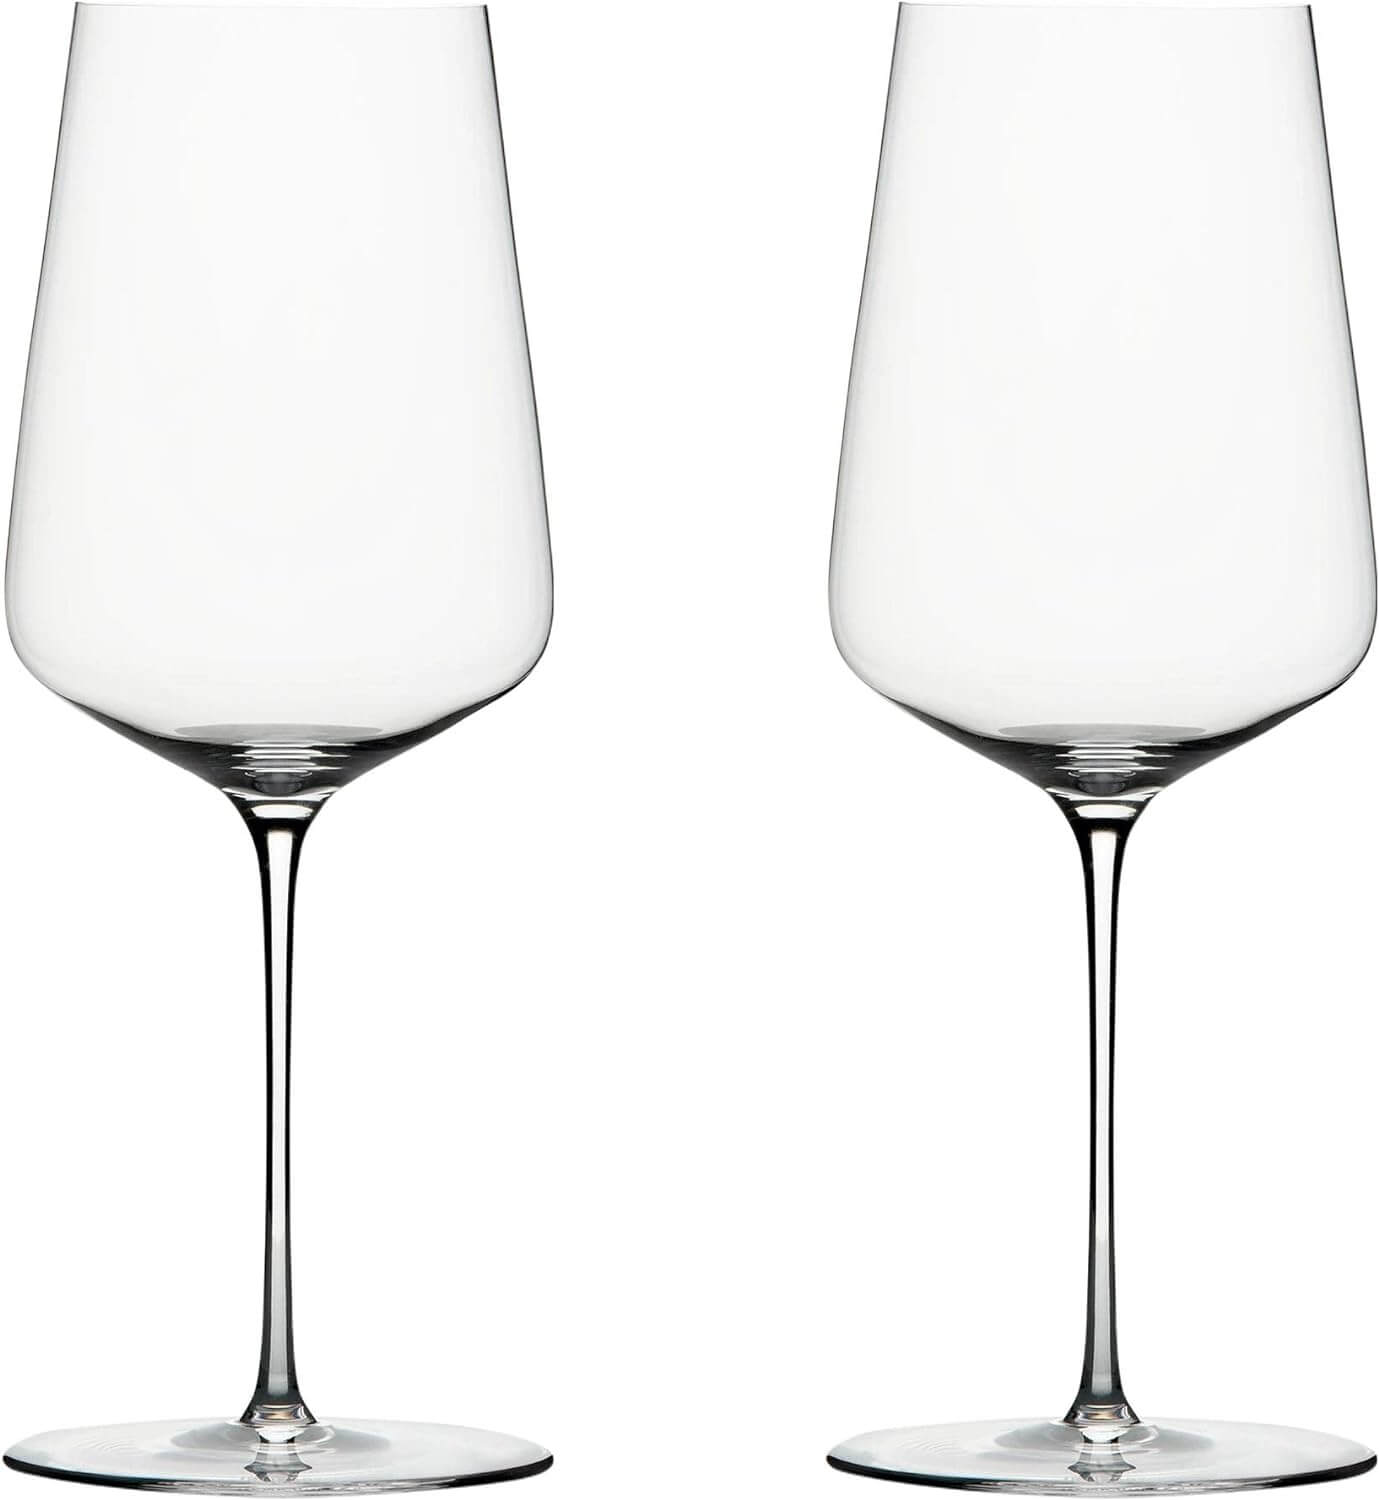 Zalto Denk’Art Universal Wine Glasses